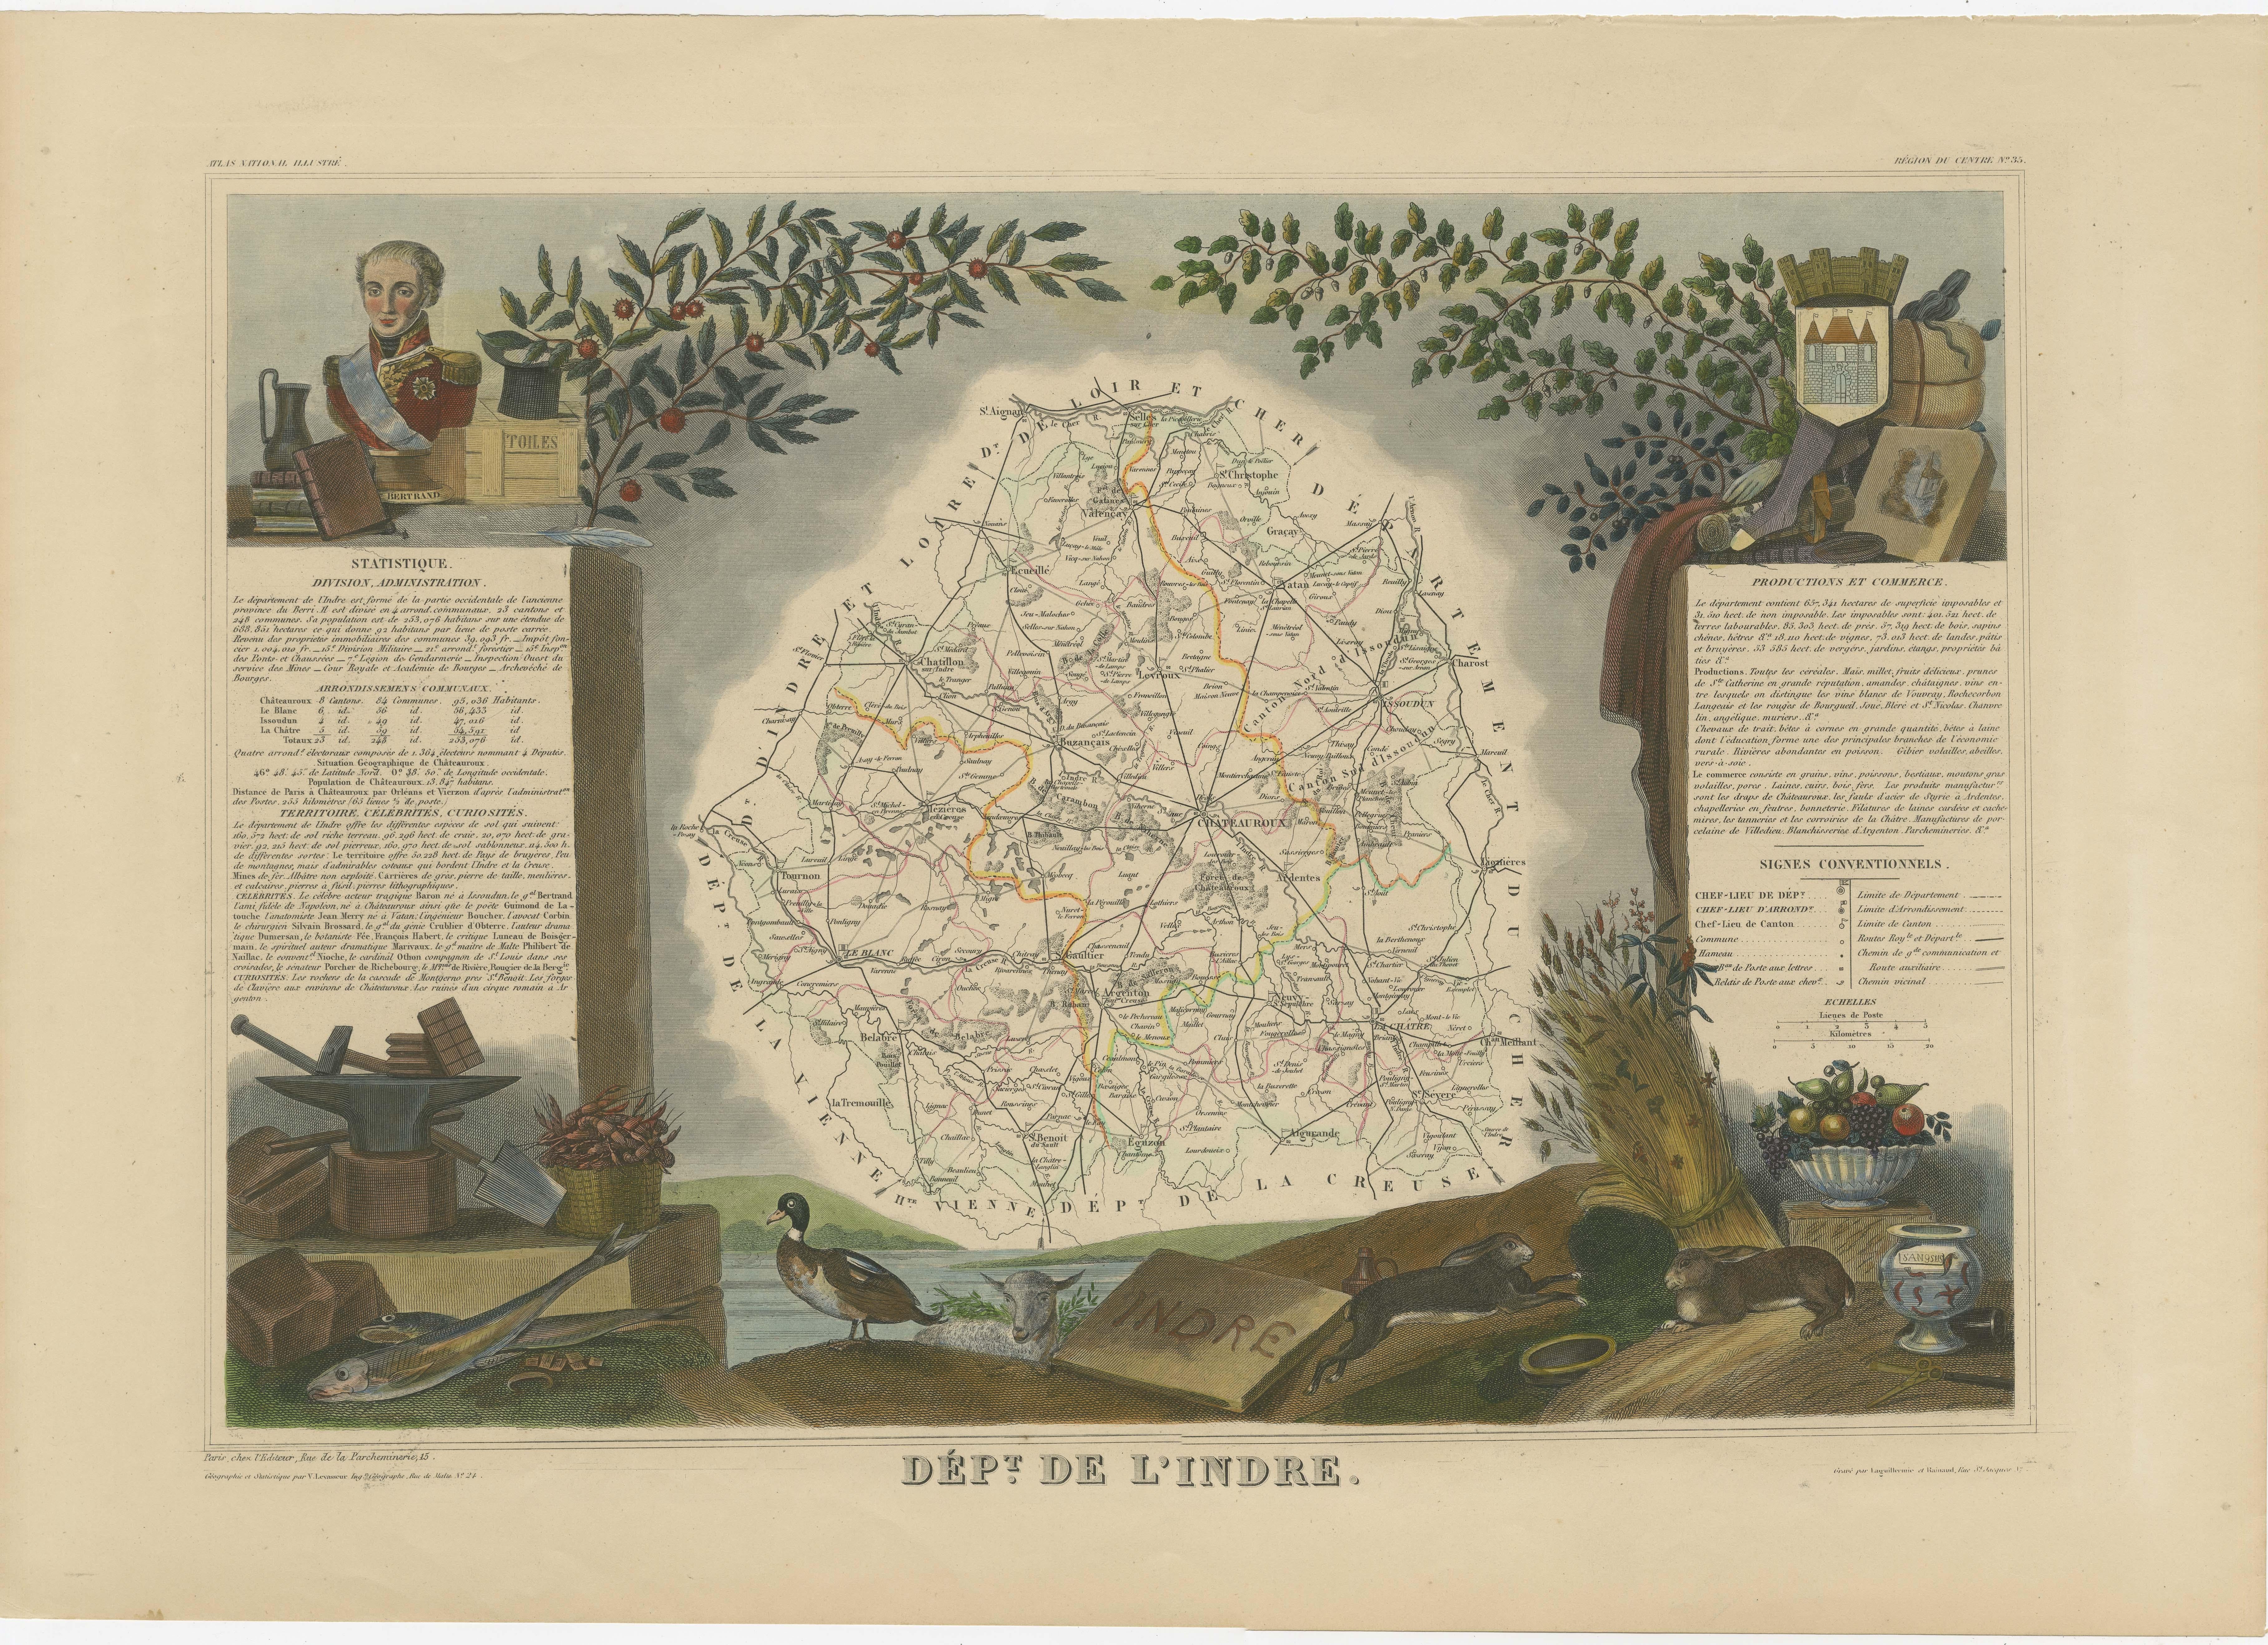 Antike Karte mit dem Titel 'Dept. de l'Indre'. Karte des französischen Departements Indre, Frankreich. Dieses zur Weinregion Loire-Tal gehörende Gebiet ist bekannt für die Herstellung von Chinon-Weinen, typischerweise Rotweine, und für die